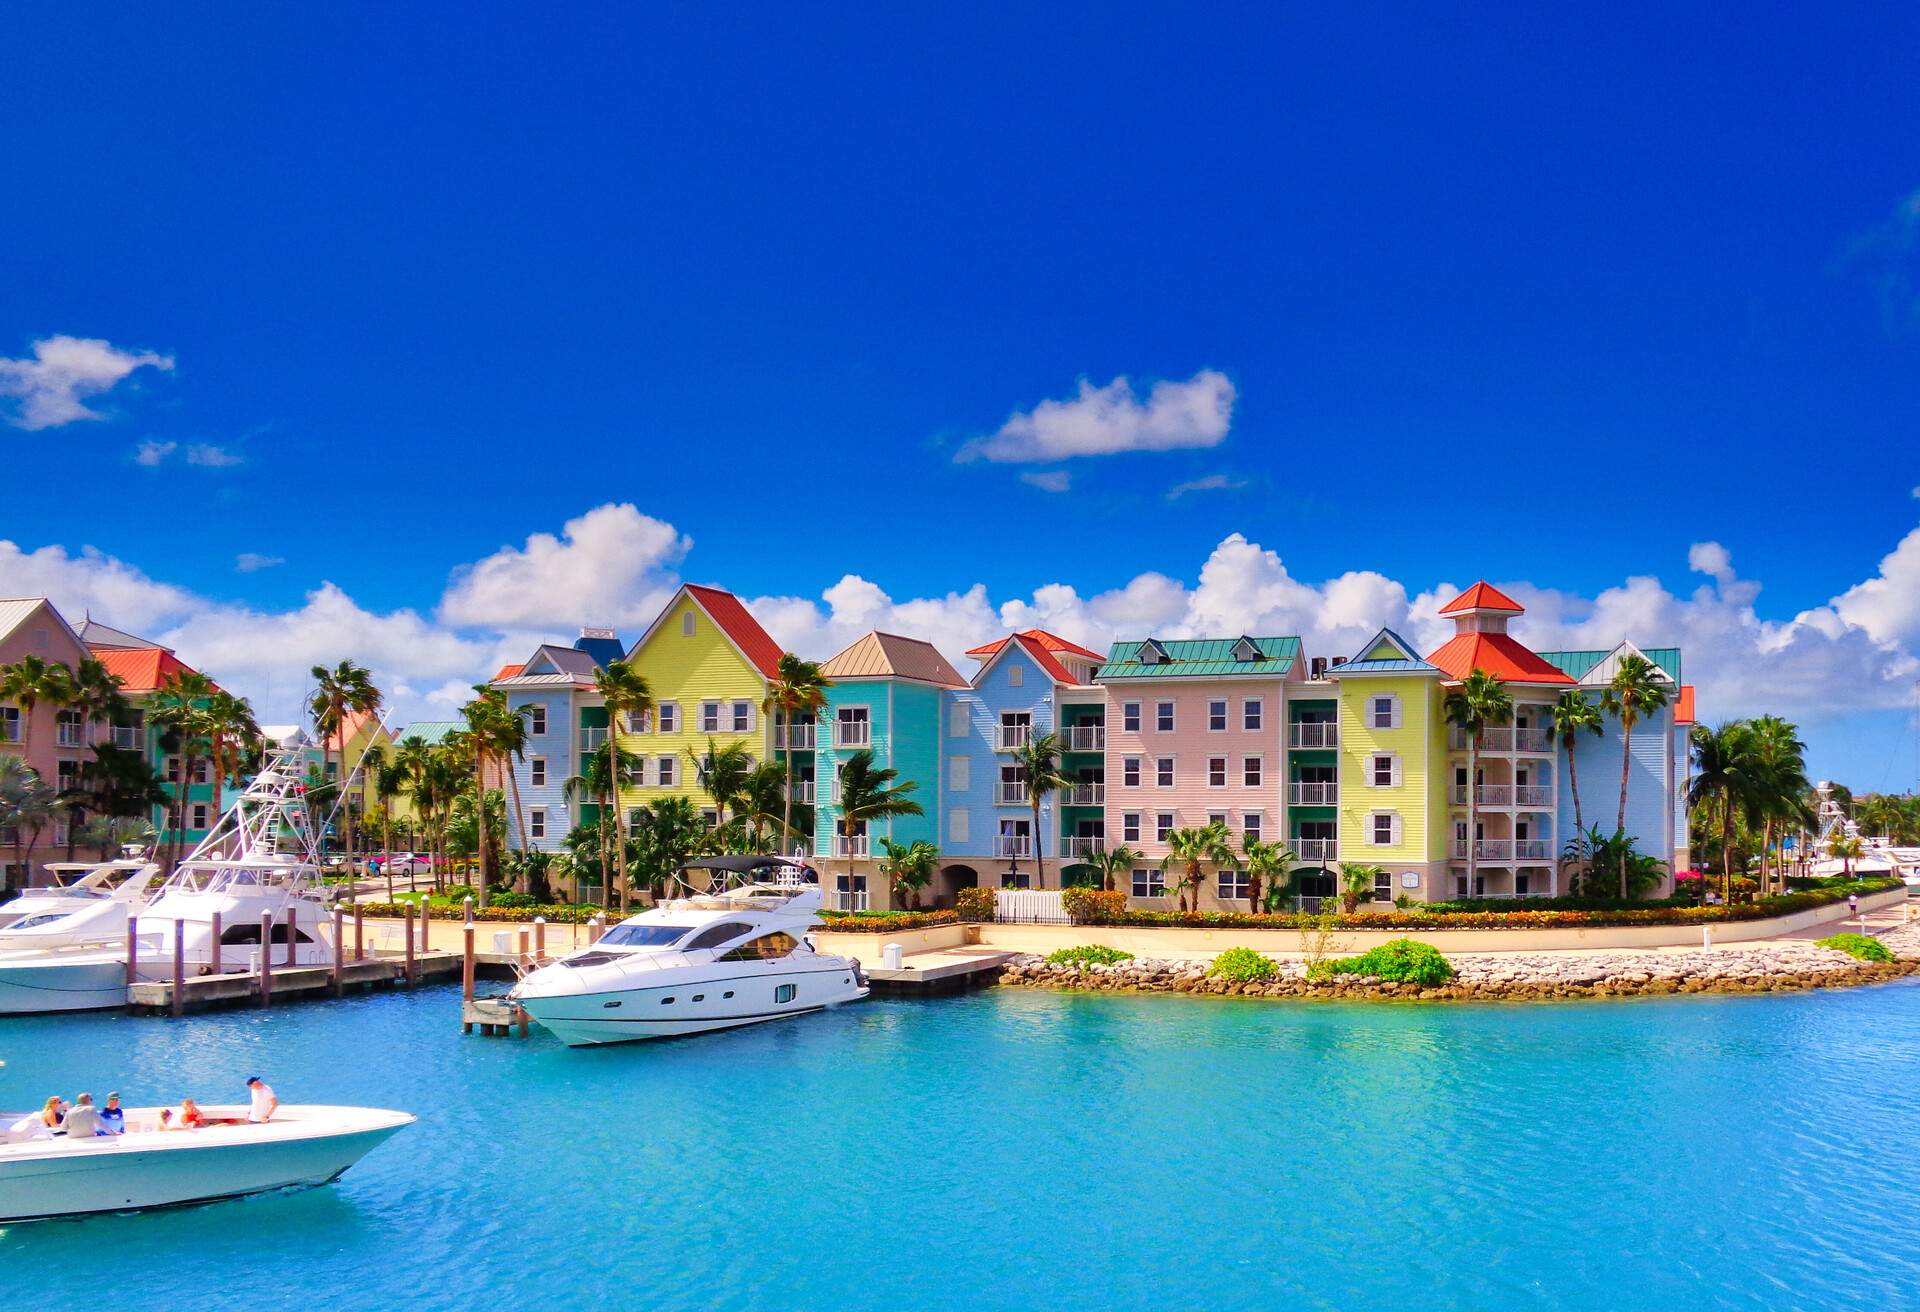 Visita las Bahamas en tu luna de miel